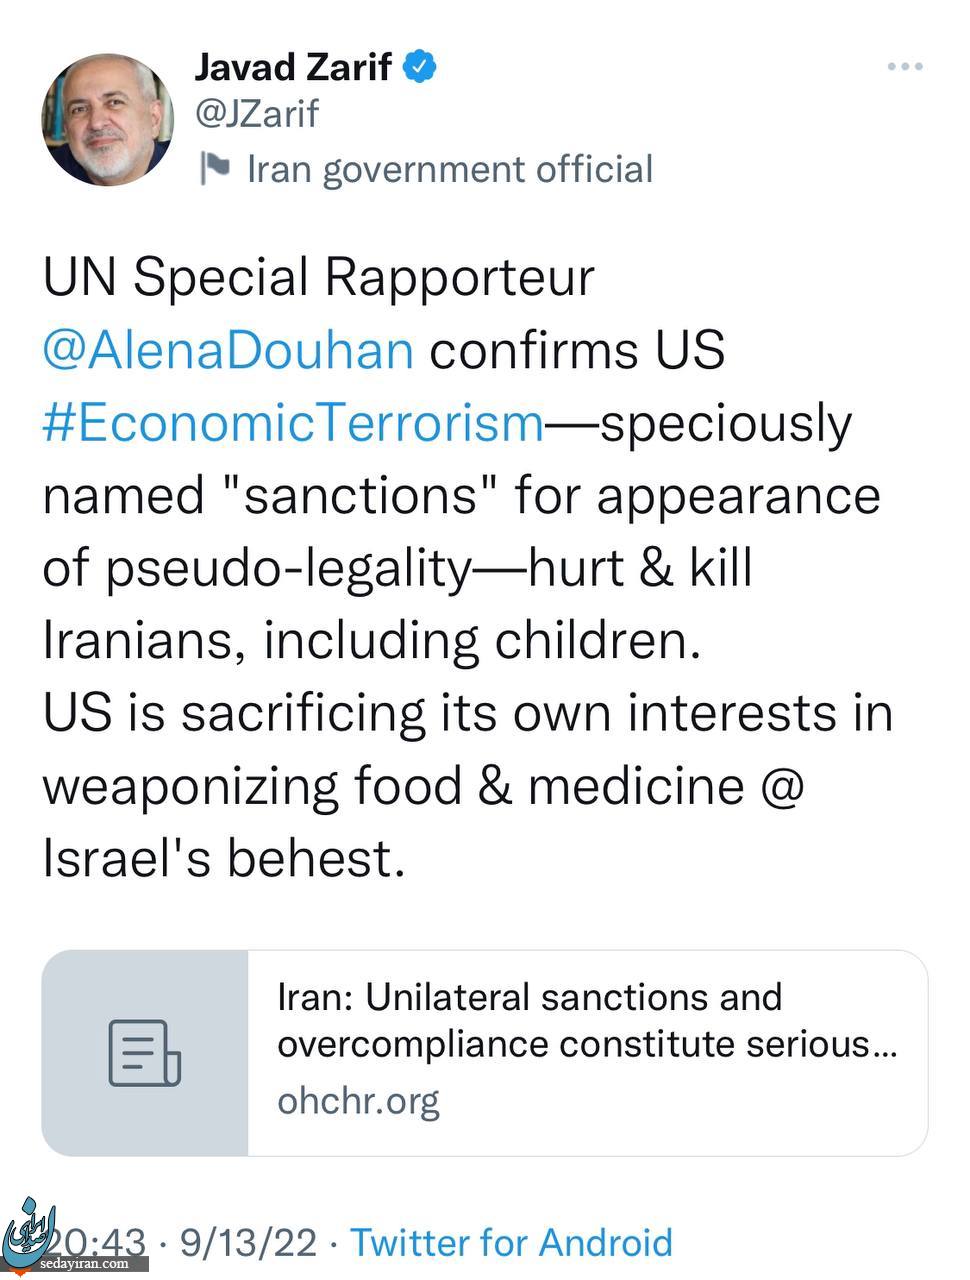 گزارشگر ویژه سازمان ملل ادعای مهم ظریف را تایید کرد+ جزئیات